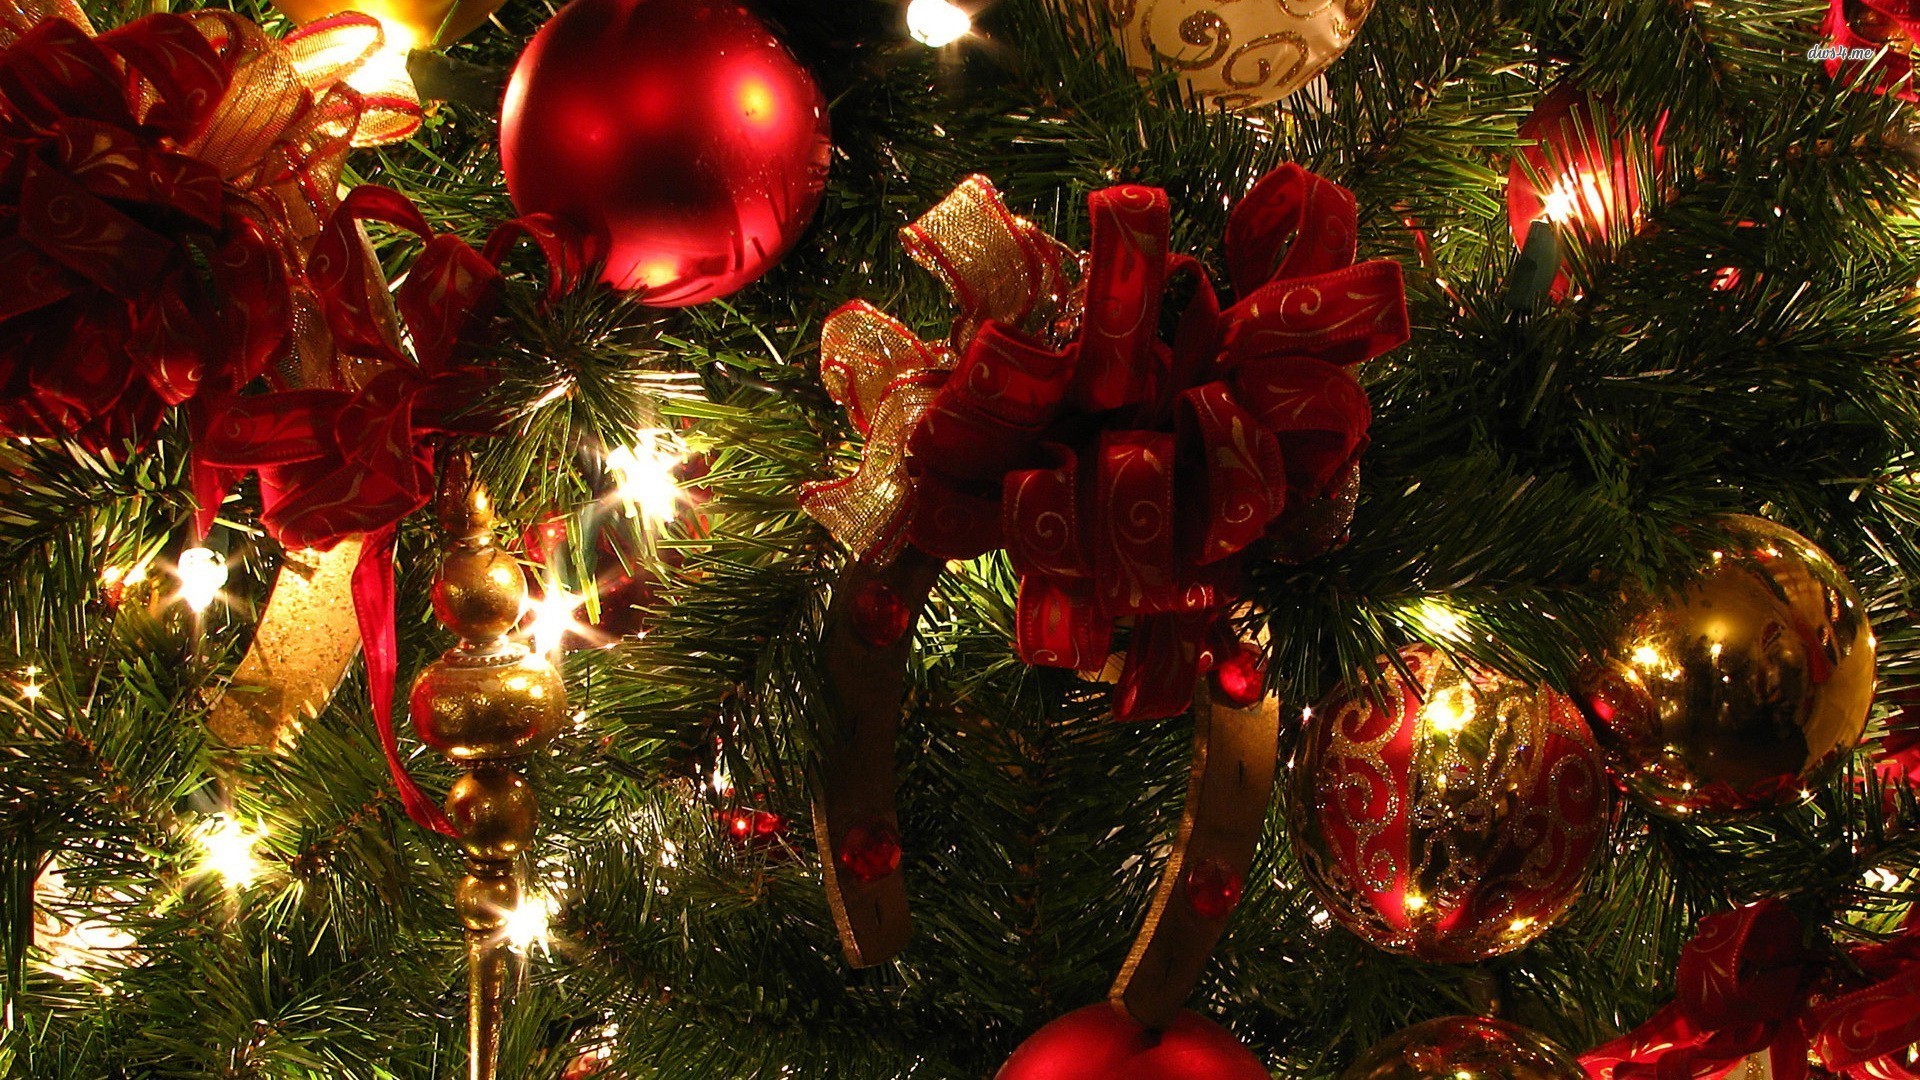 sfondi di natale hd widescreen,ornamento di natale,decorazione natalizia,albero di natale,natale,albero